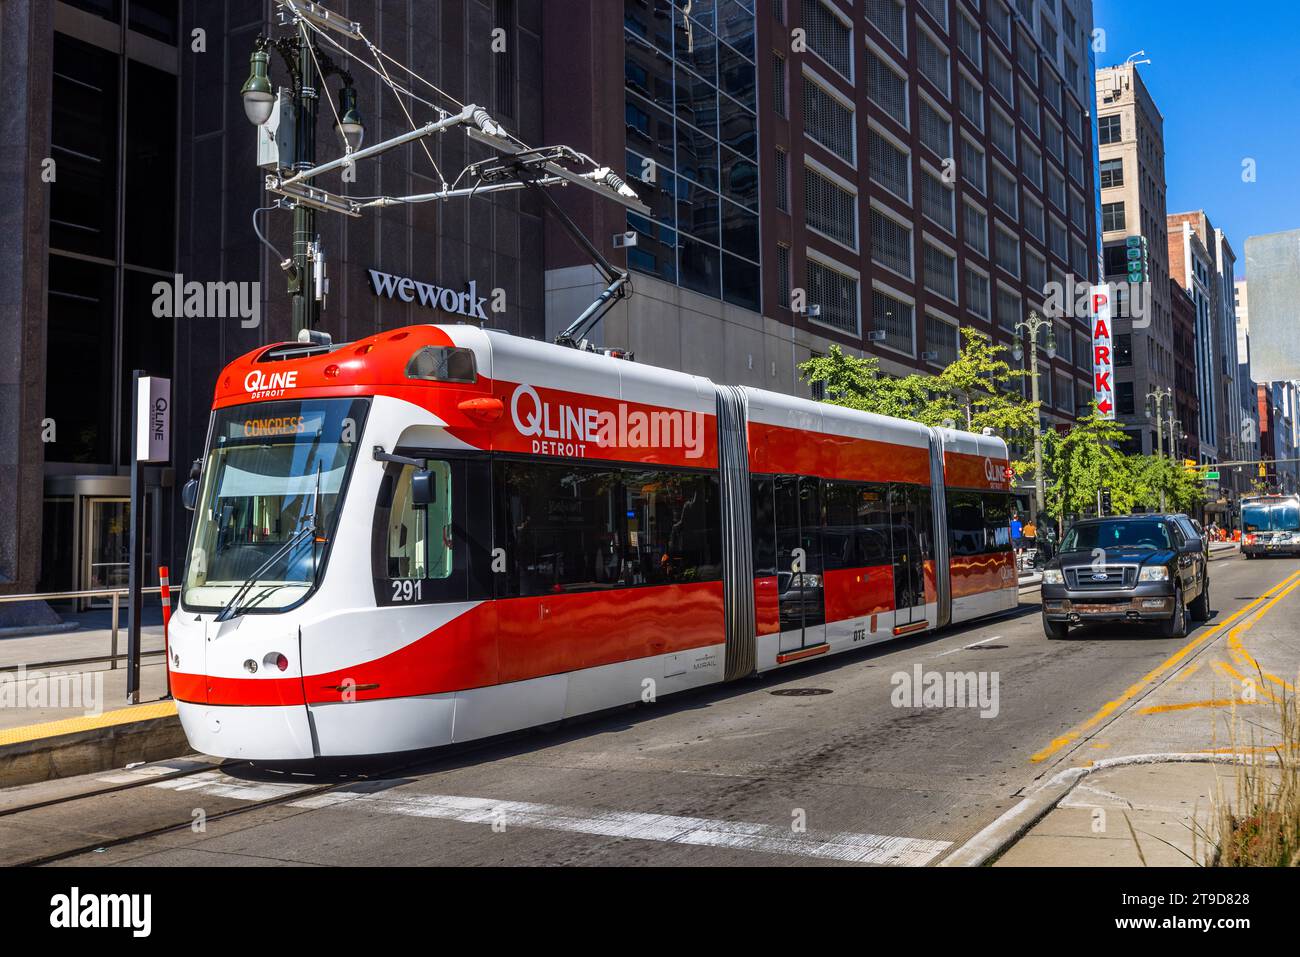 « Qline » est le nom du tramway sur Woodward Avenue à Detroit. Construit et parrainé comme moyen de transport pour les employés de Quicken Loans au siège social de l'entreprise au centre-ville de Detroit. Le tramway est à la disposition des passagers gratuitement. Qline est le nom du tramway de Détroit, aux États-Unis Banque D'Images